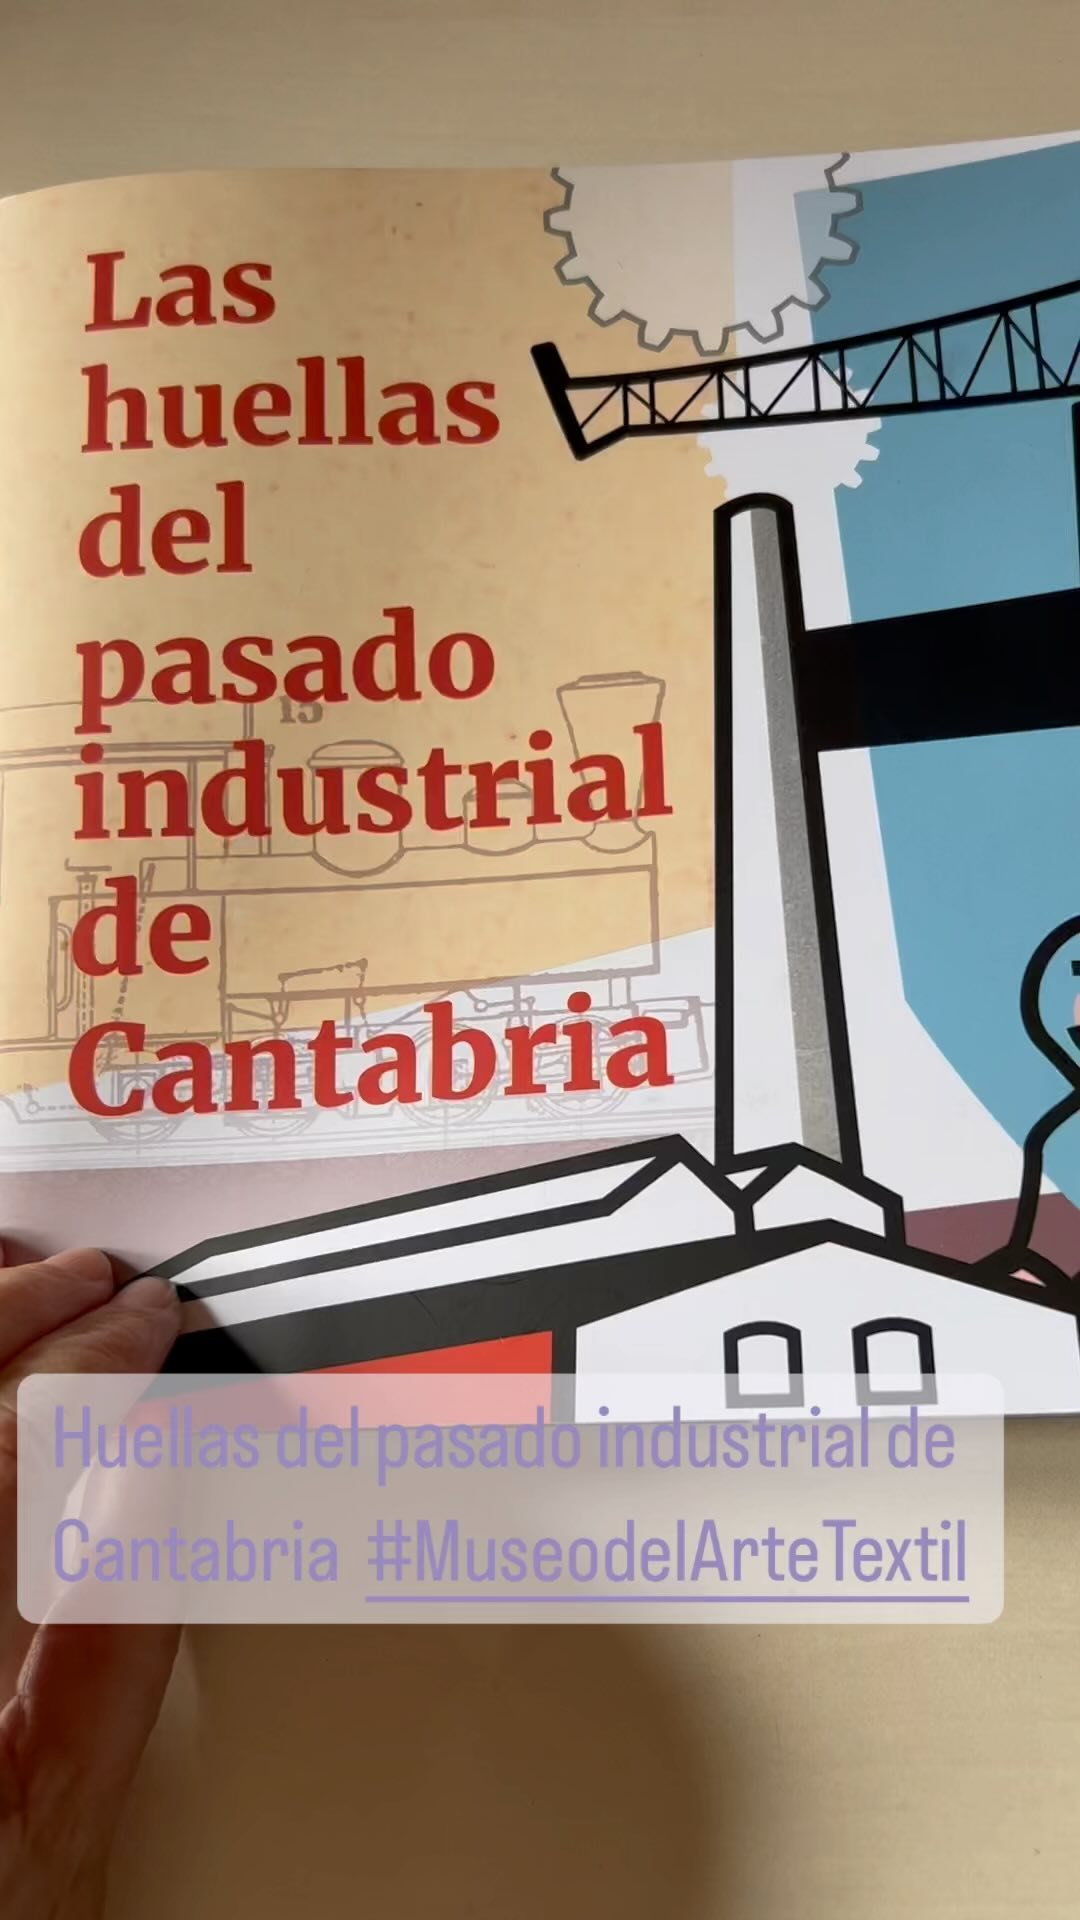 Queremos agradecer desde @turismo_cabezondelasal el trabajo realizado por la Asociación del Patrimonio Industrial de Cantabria 💢💢💢. Nuestro Museo del Arte Textil ha dejado sus huellas en este interesante folleto sobre el pasado industrial de nuestra región.